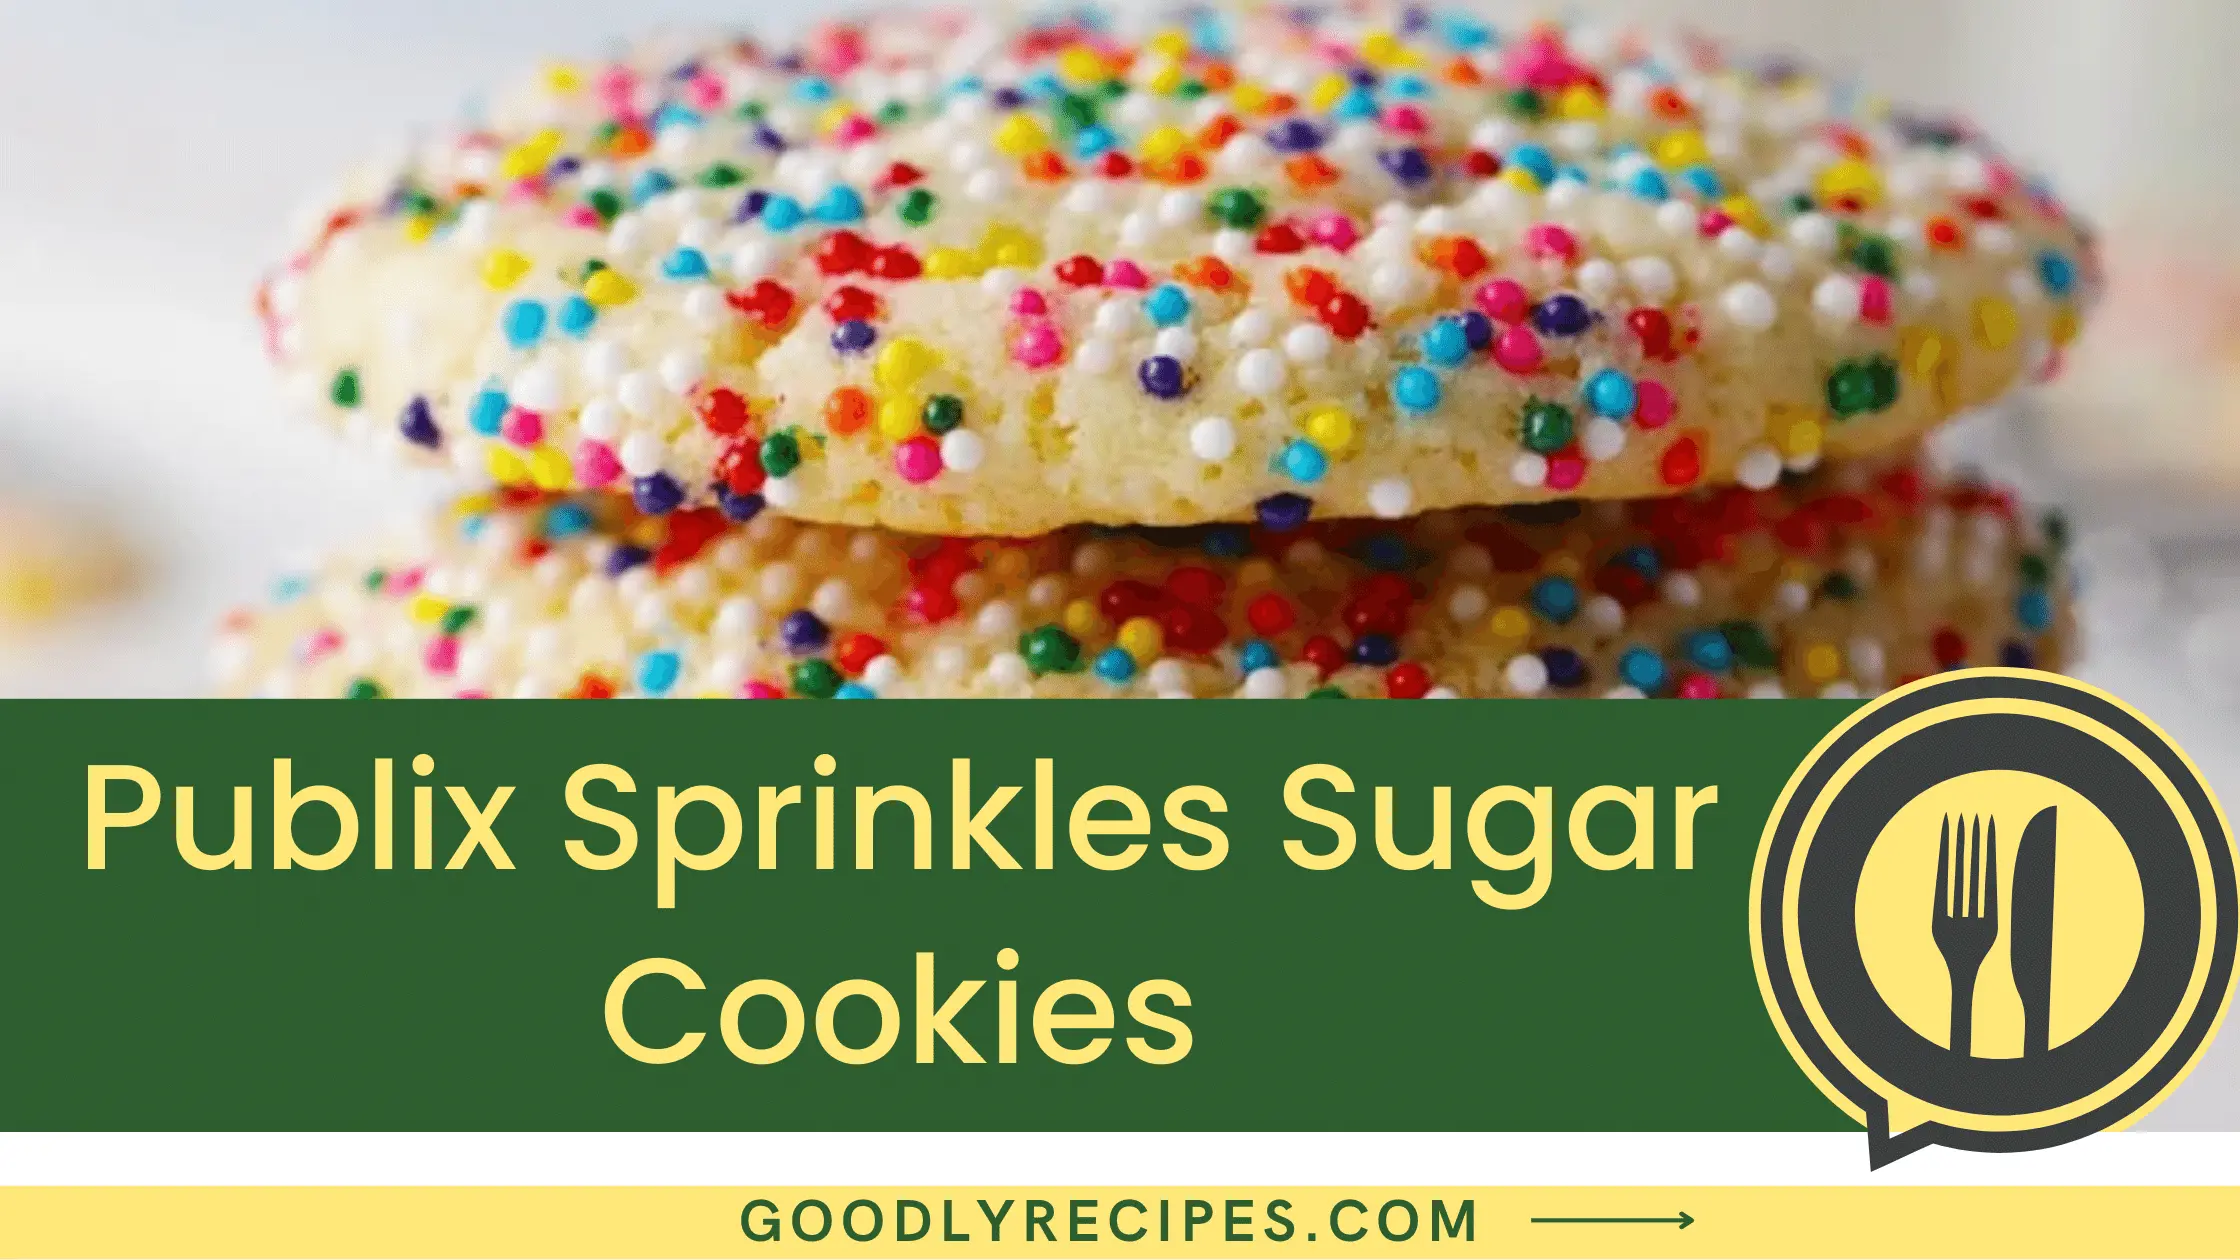 Publix Sprinkles Sugar Cookies